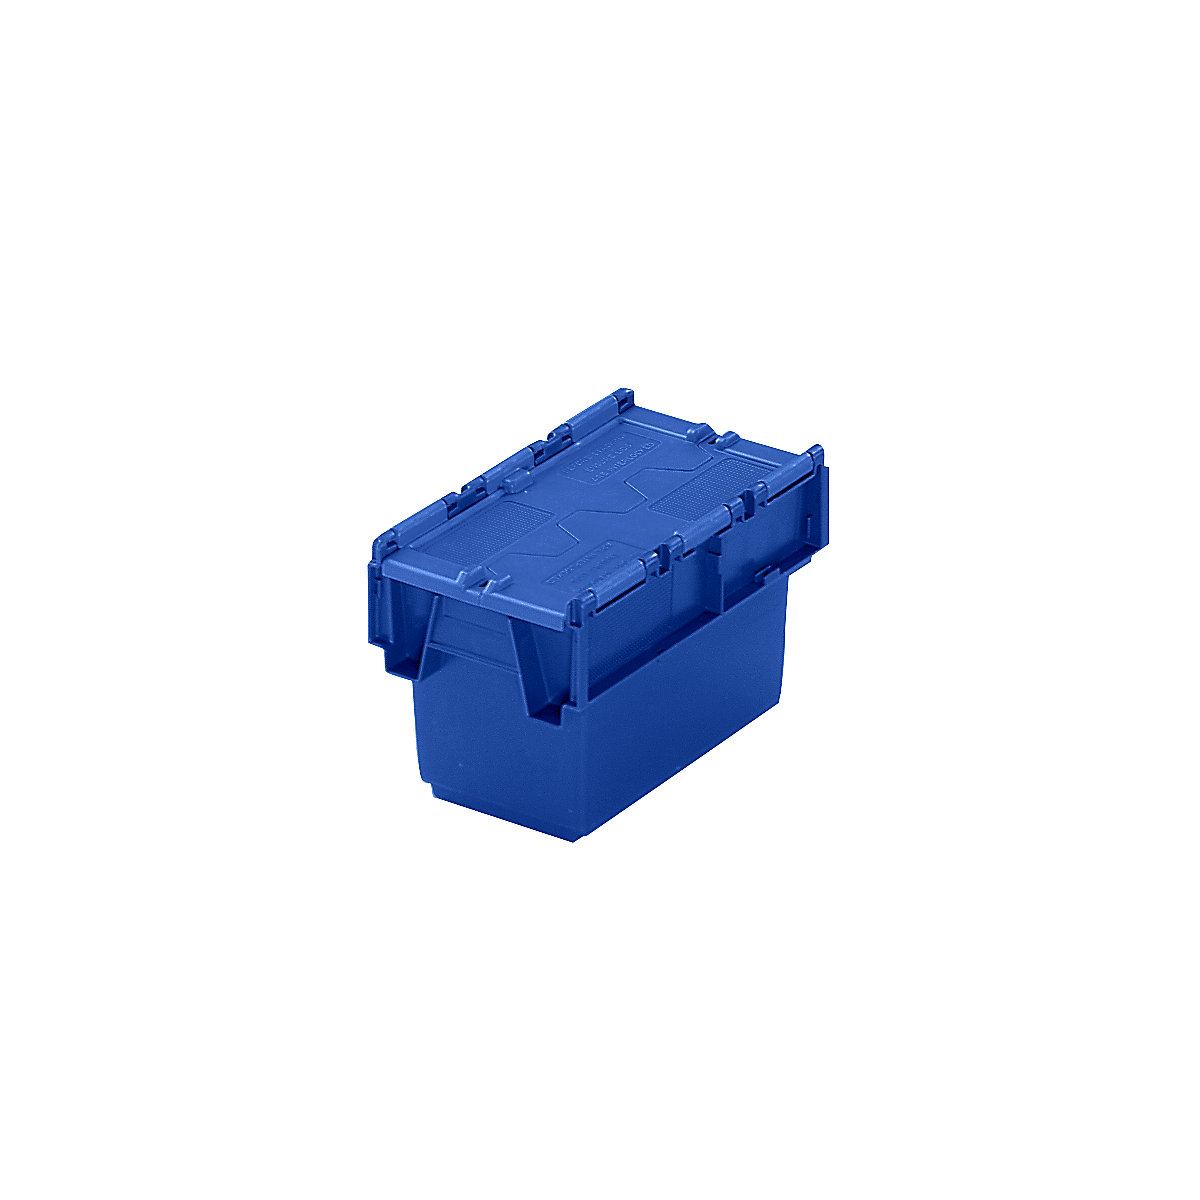 Mehrweg-Stapelbehälter mit Klappdeckel, Inhalt 6 Liter, LxBxH 300 x 200 x 200 mm, blau, ab 10 Stück